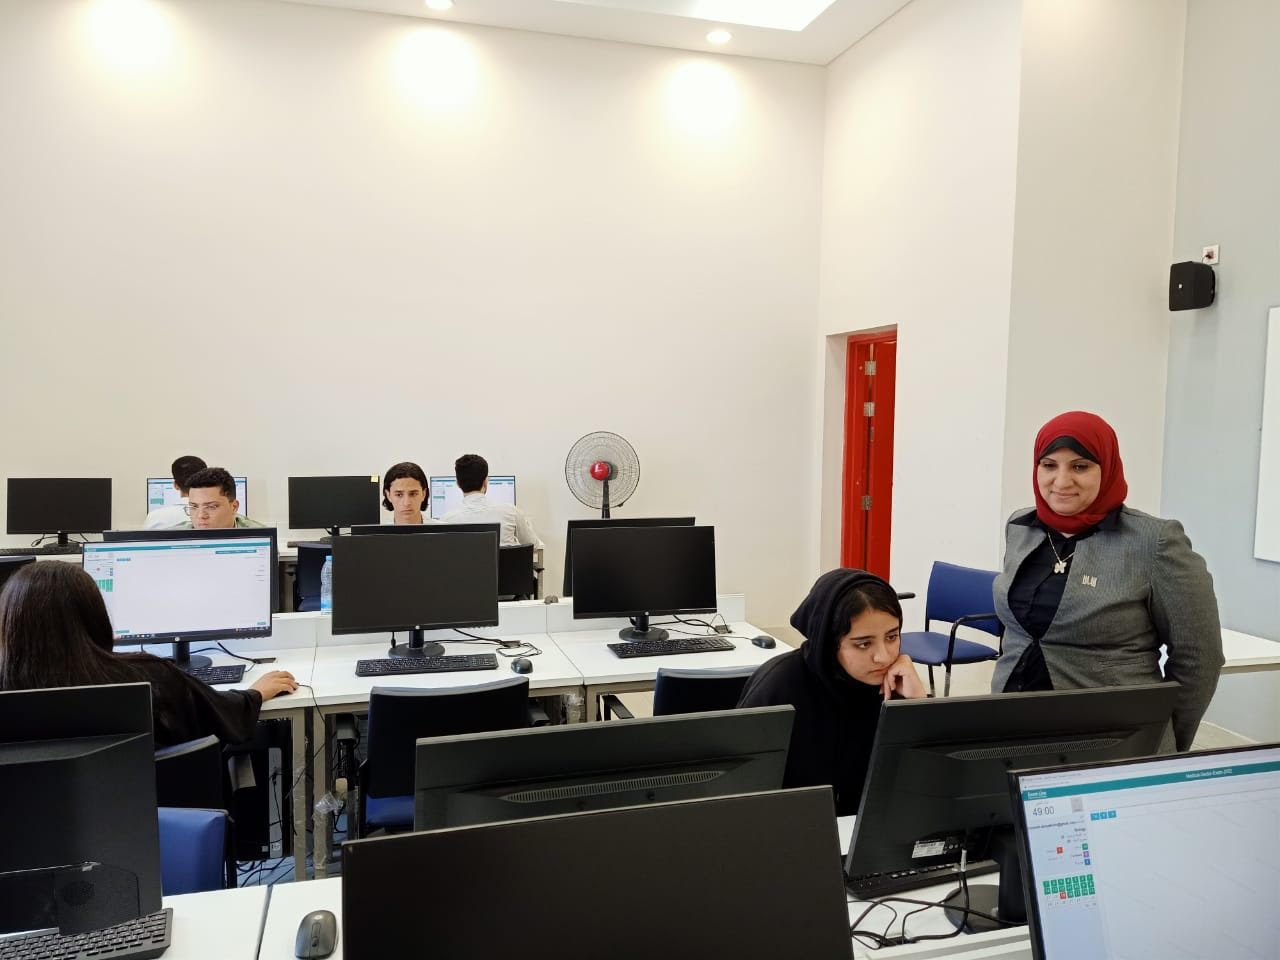 انطلاق اختبارات قبول الطلاب بالجامعات الأهلية بجامعة المنصورة الجديدة (9)